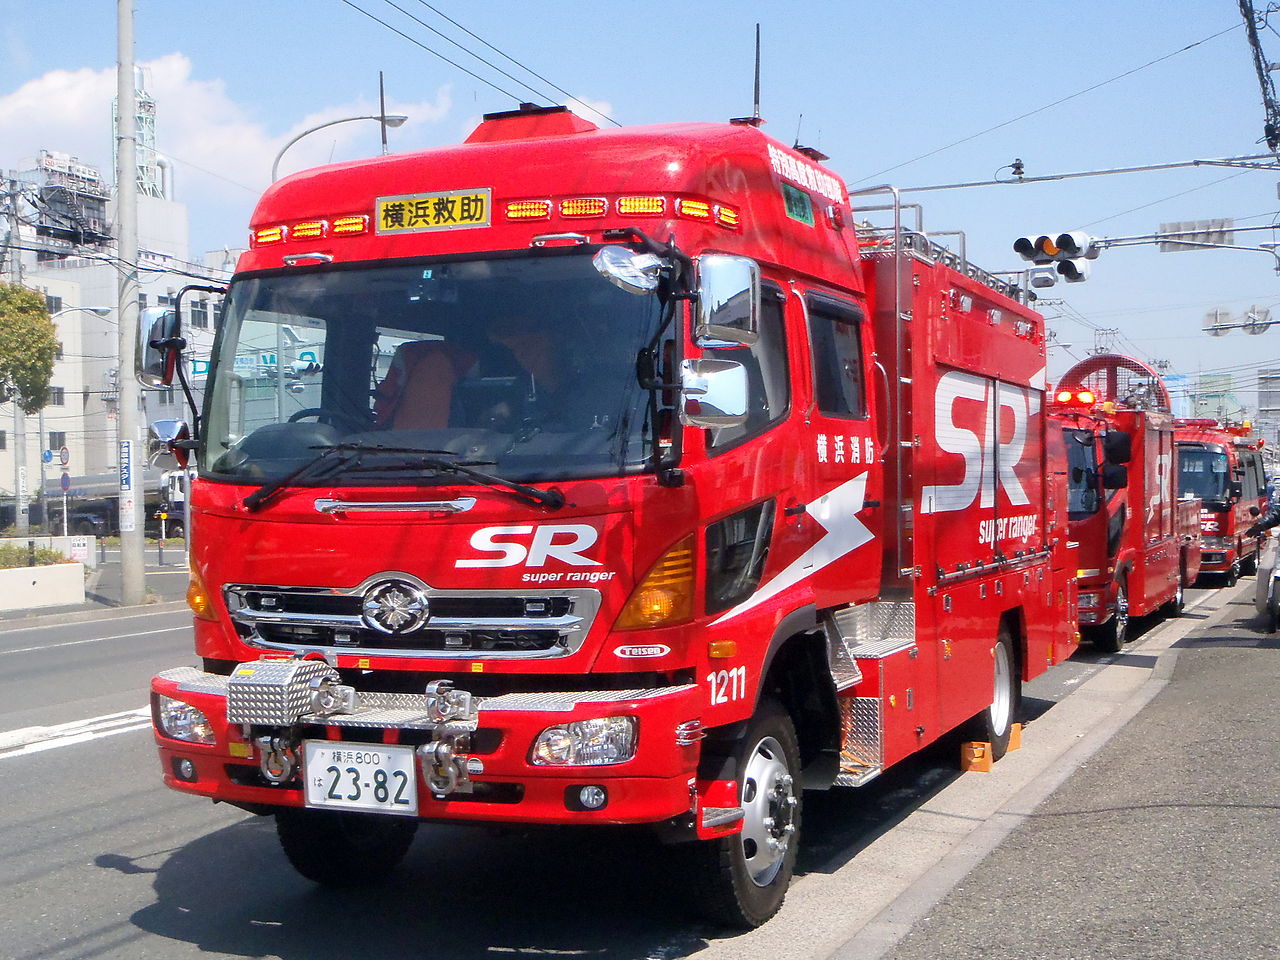 特別高度救助部隊 スーパーレンジャー ハイルーフ型 横浜市消防局III型